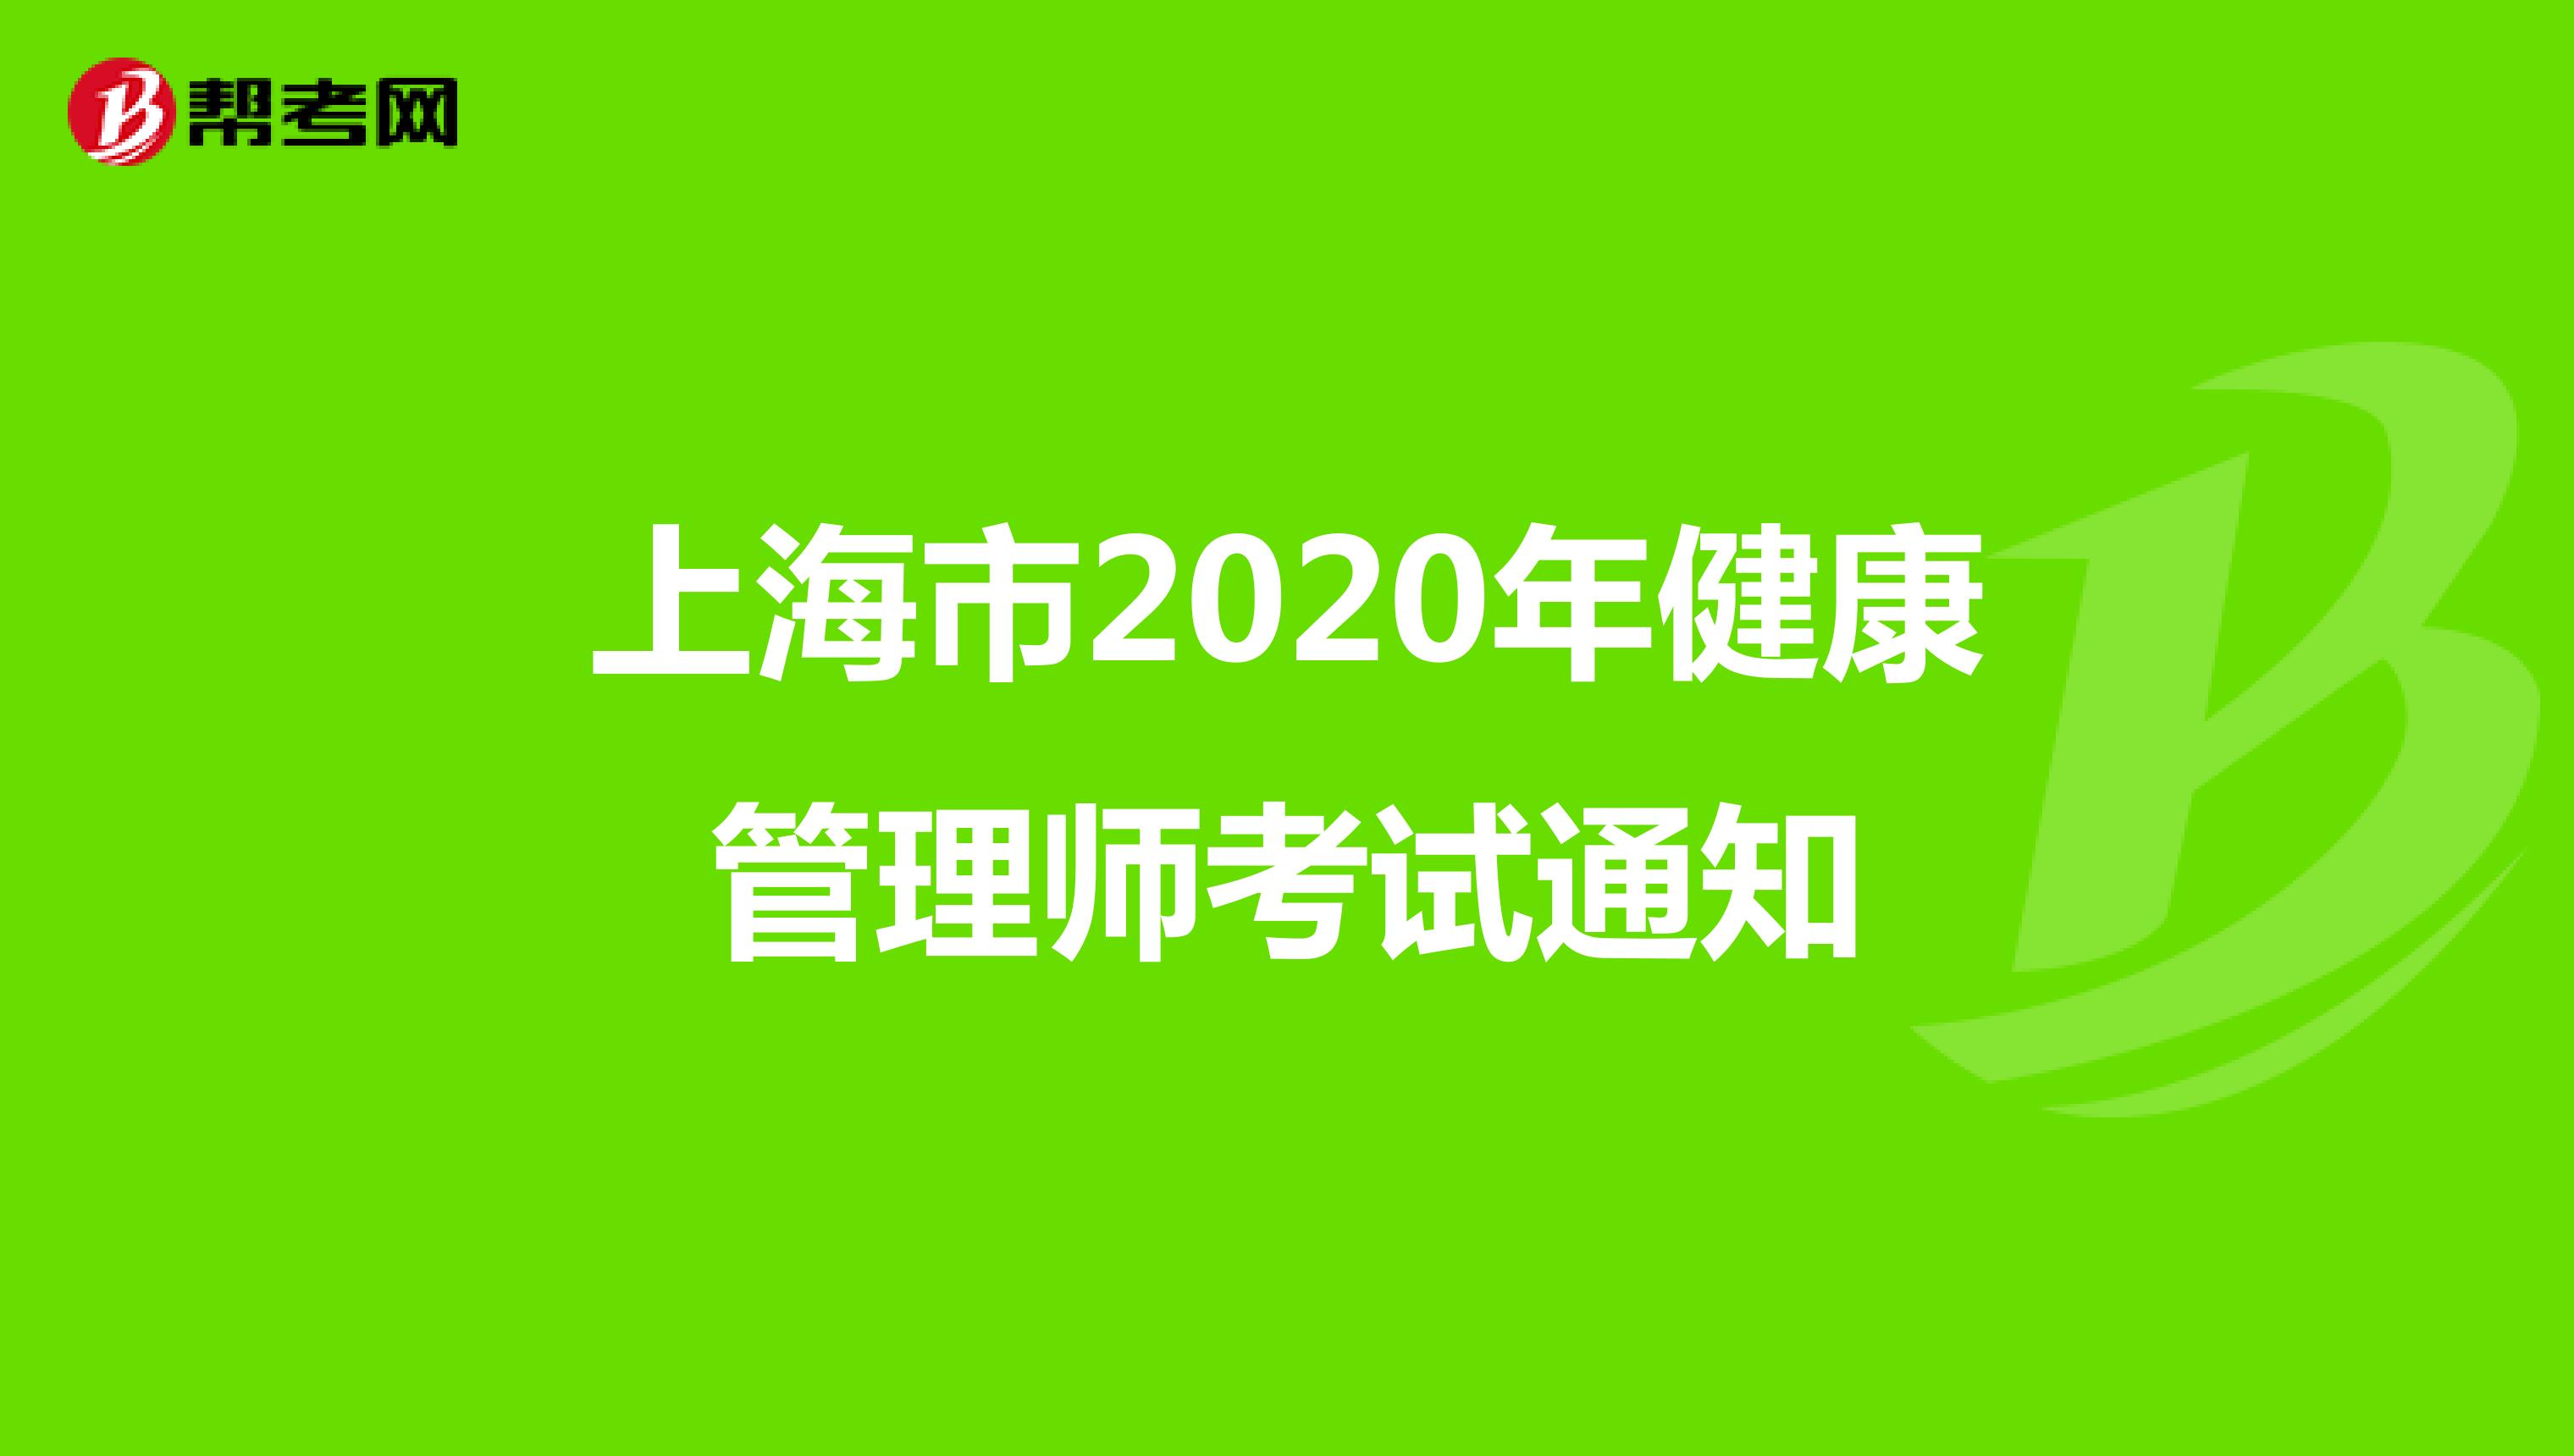 上海市2020年健康管理师考试通知